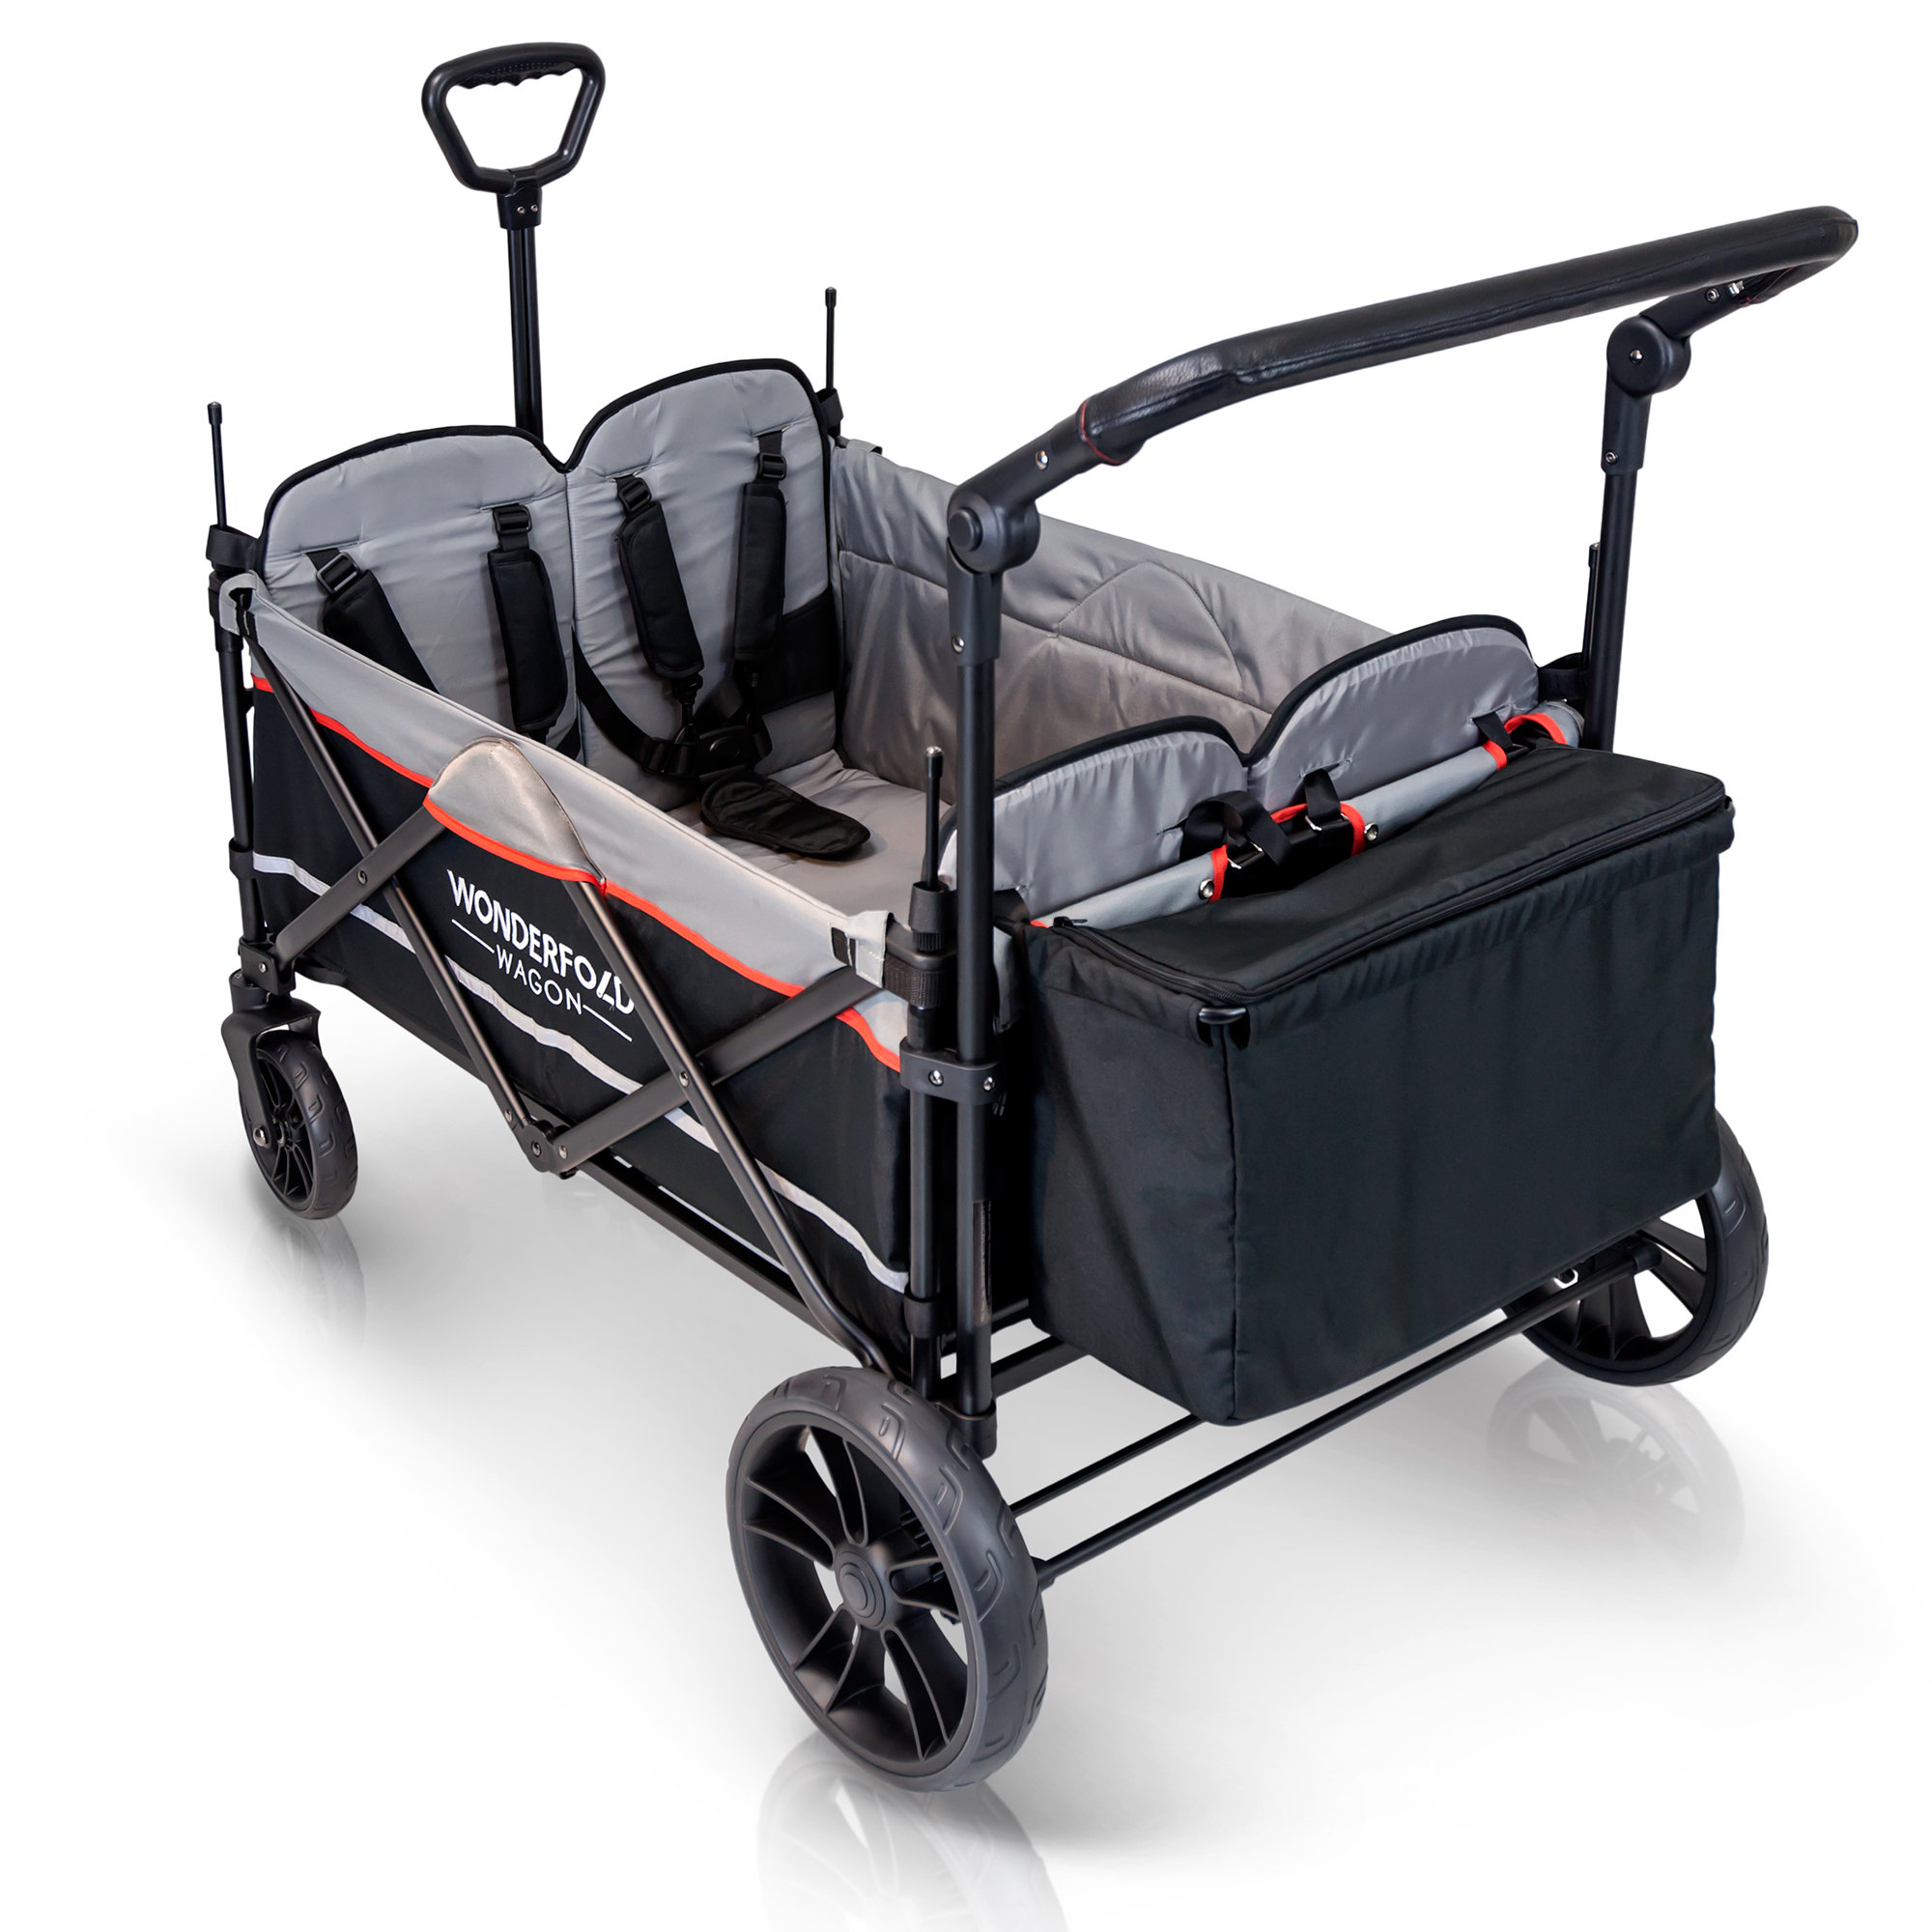 quad stroller wagon